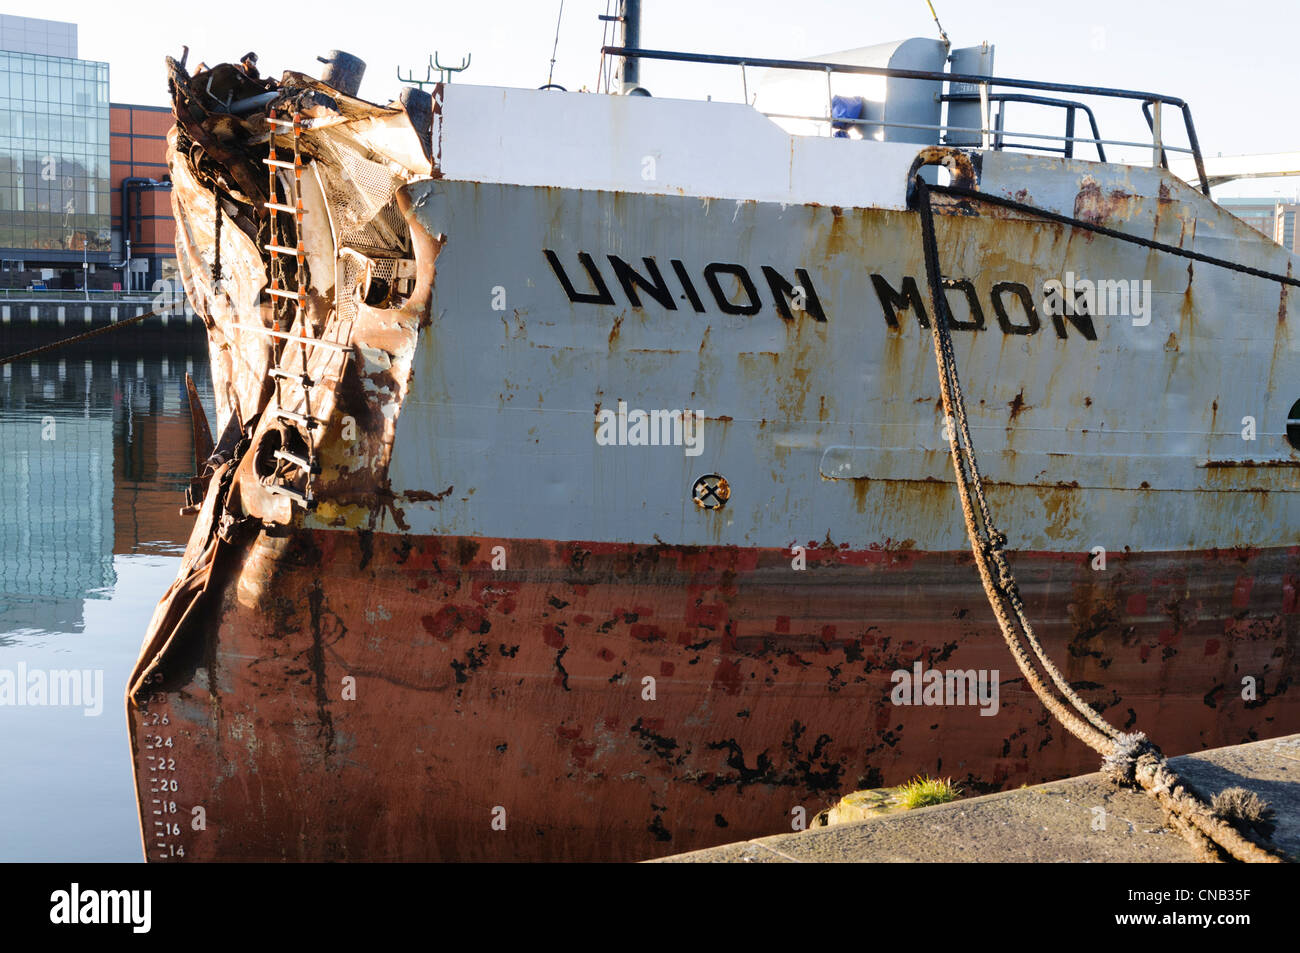 Union européenne, navire endommagé lune après s'écraser dans un ferry Stena Line, Belfast. Banque D'Images